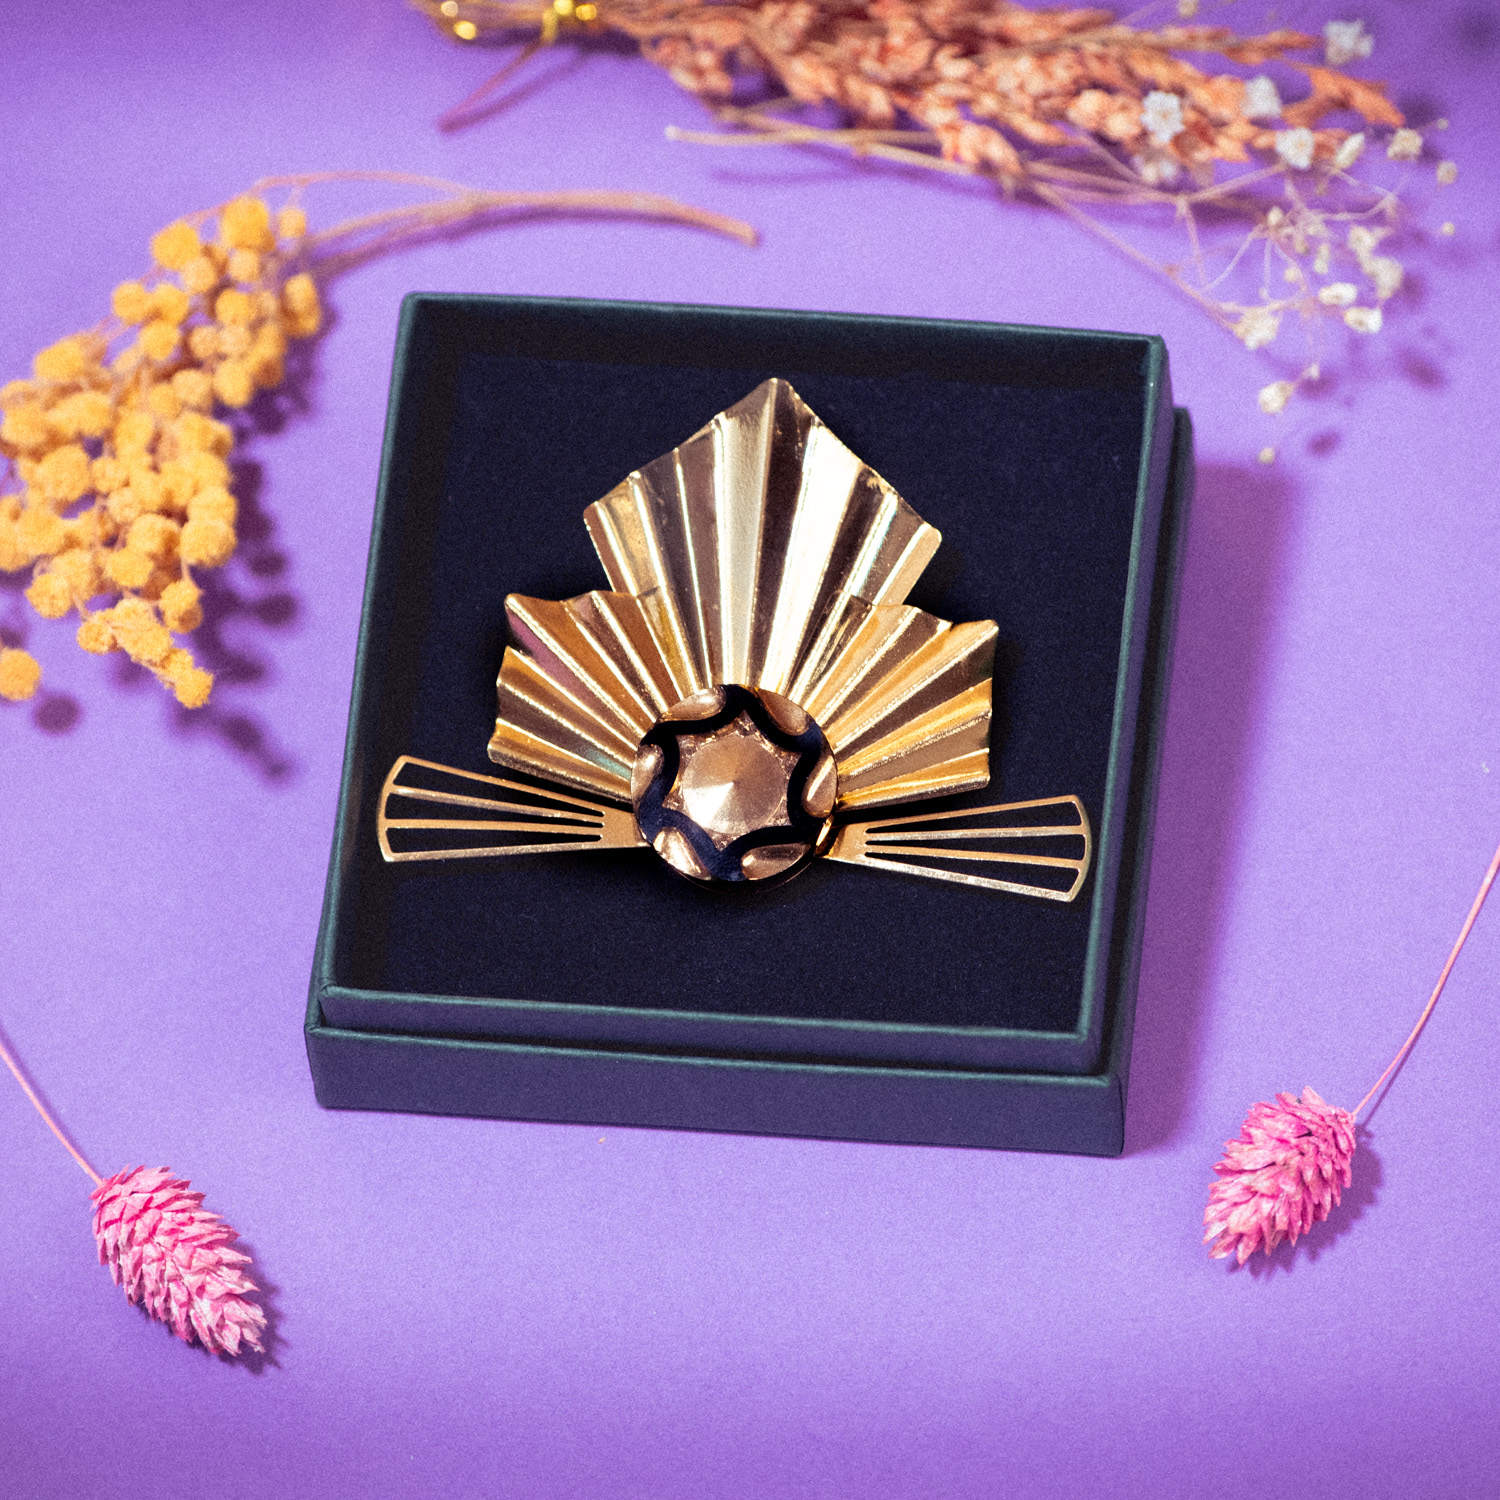 Assuna – broche Khépri La Vigie Marcelle dorée – bouton ancien 1920 – broche d’inspiration vintage et égyptienne